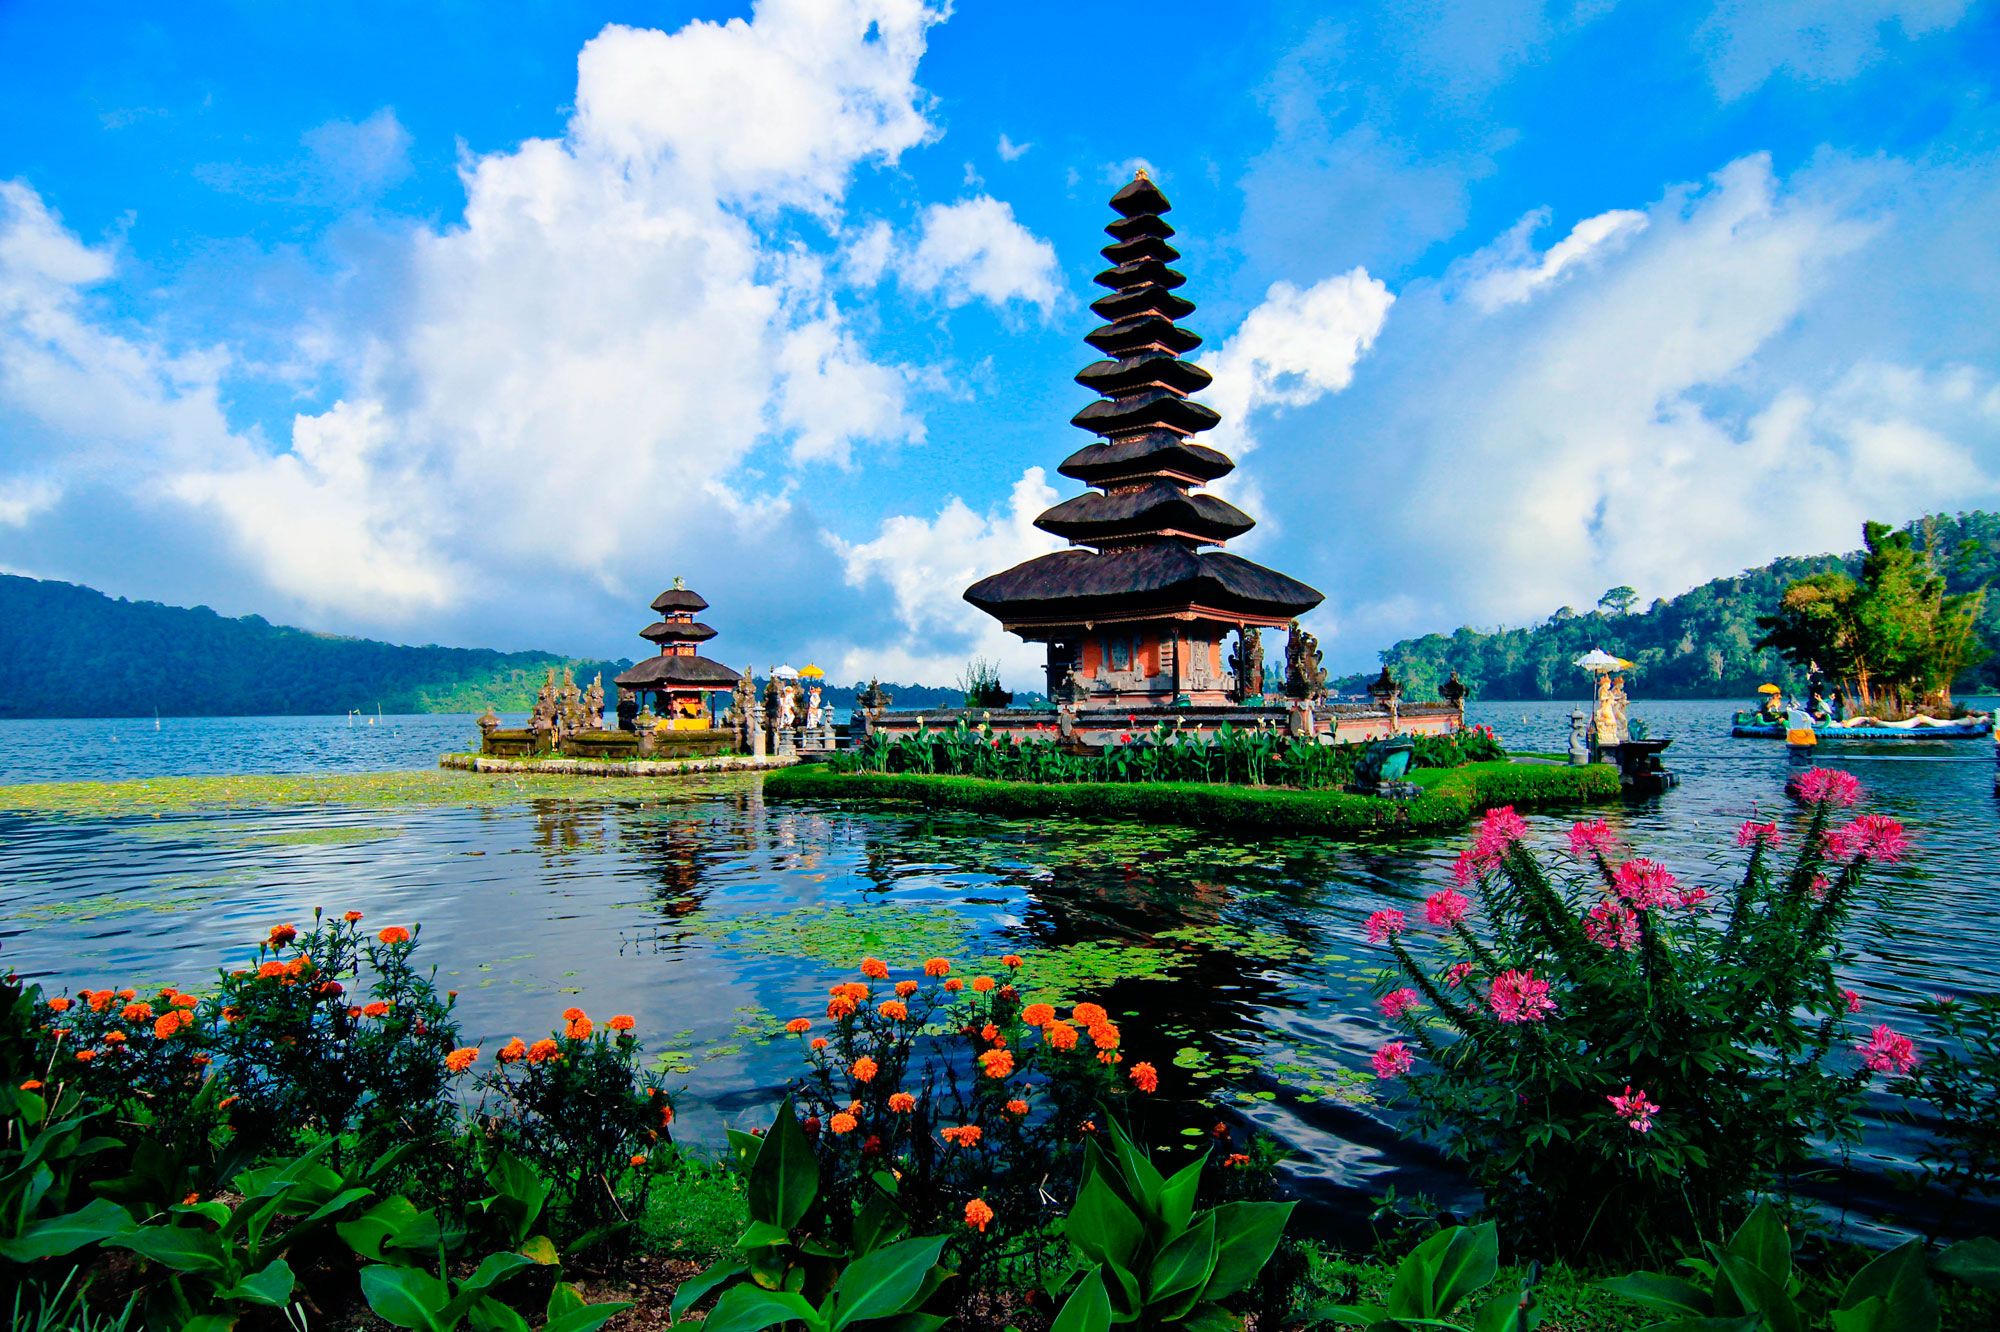 Solemur teams' incentive trip to Bali